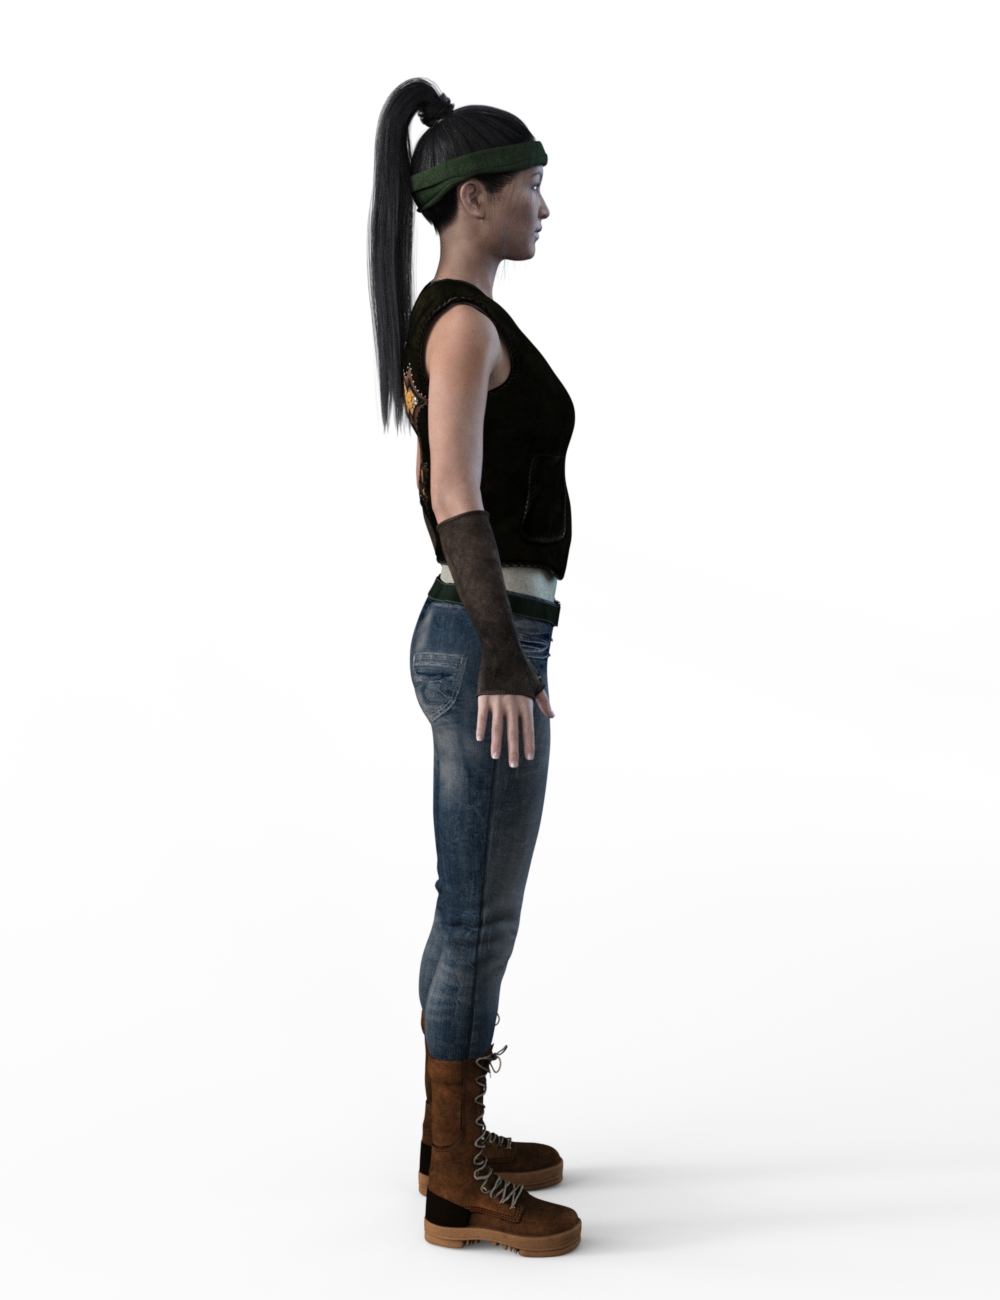 FBX- Mei Lin Wall Ranger by: Paleo, 3D Models by Daz 3D